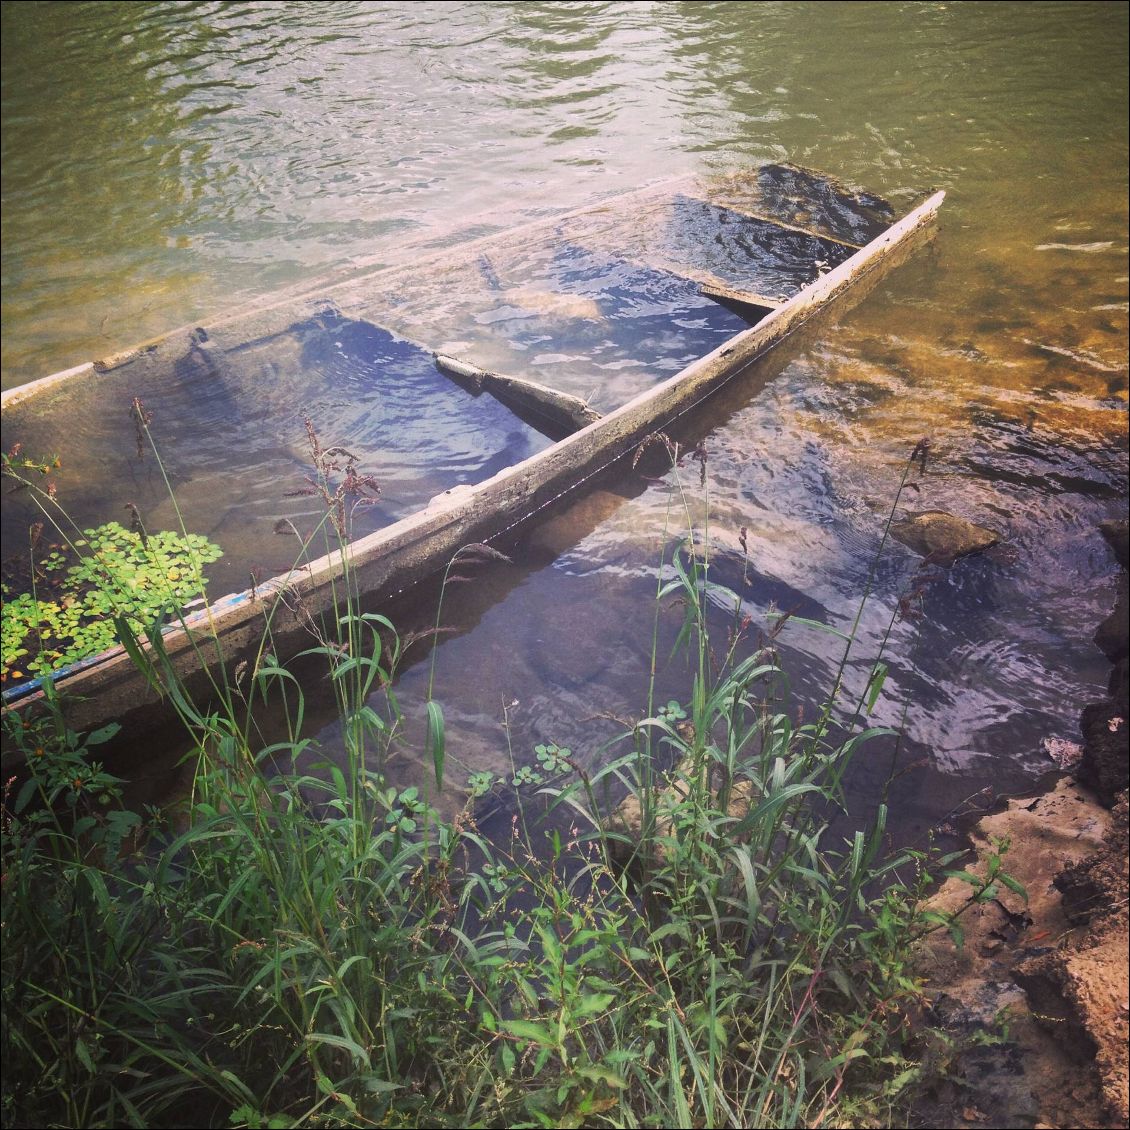 Cheffes. Une pause pour reformé le dessous du kayak et faire le plein d'eau potable.